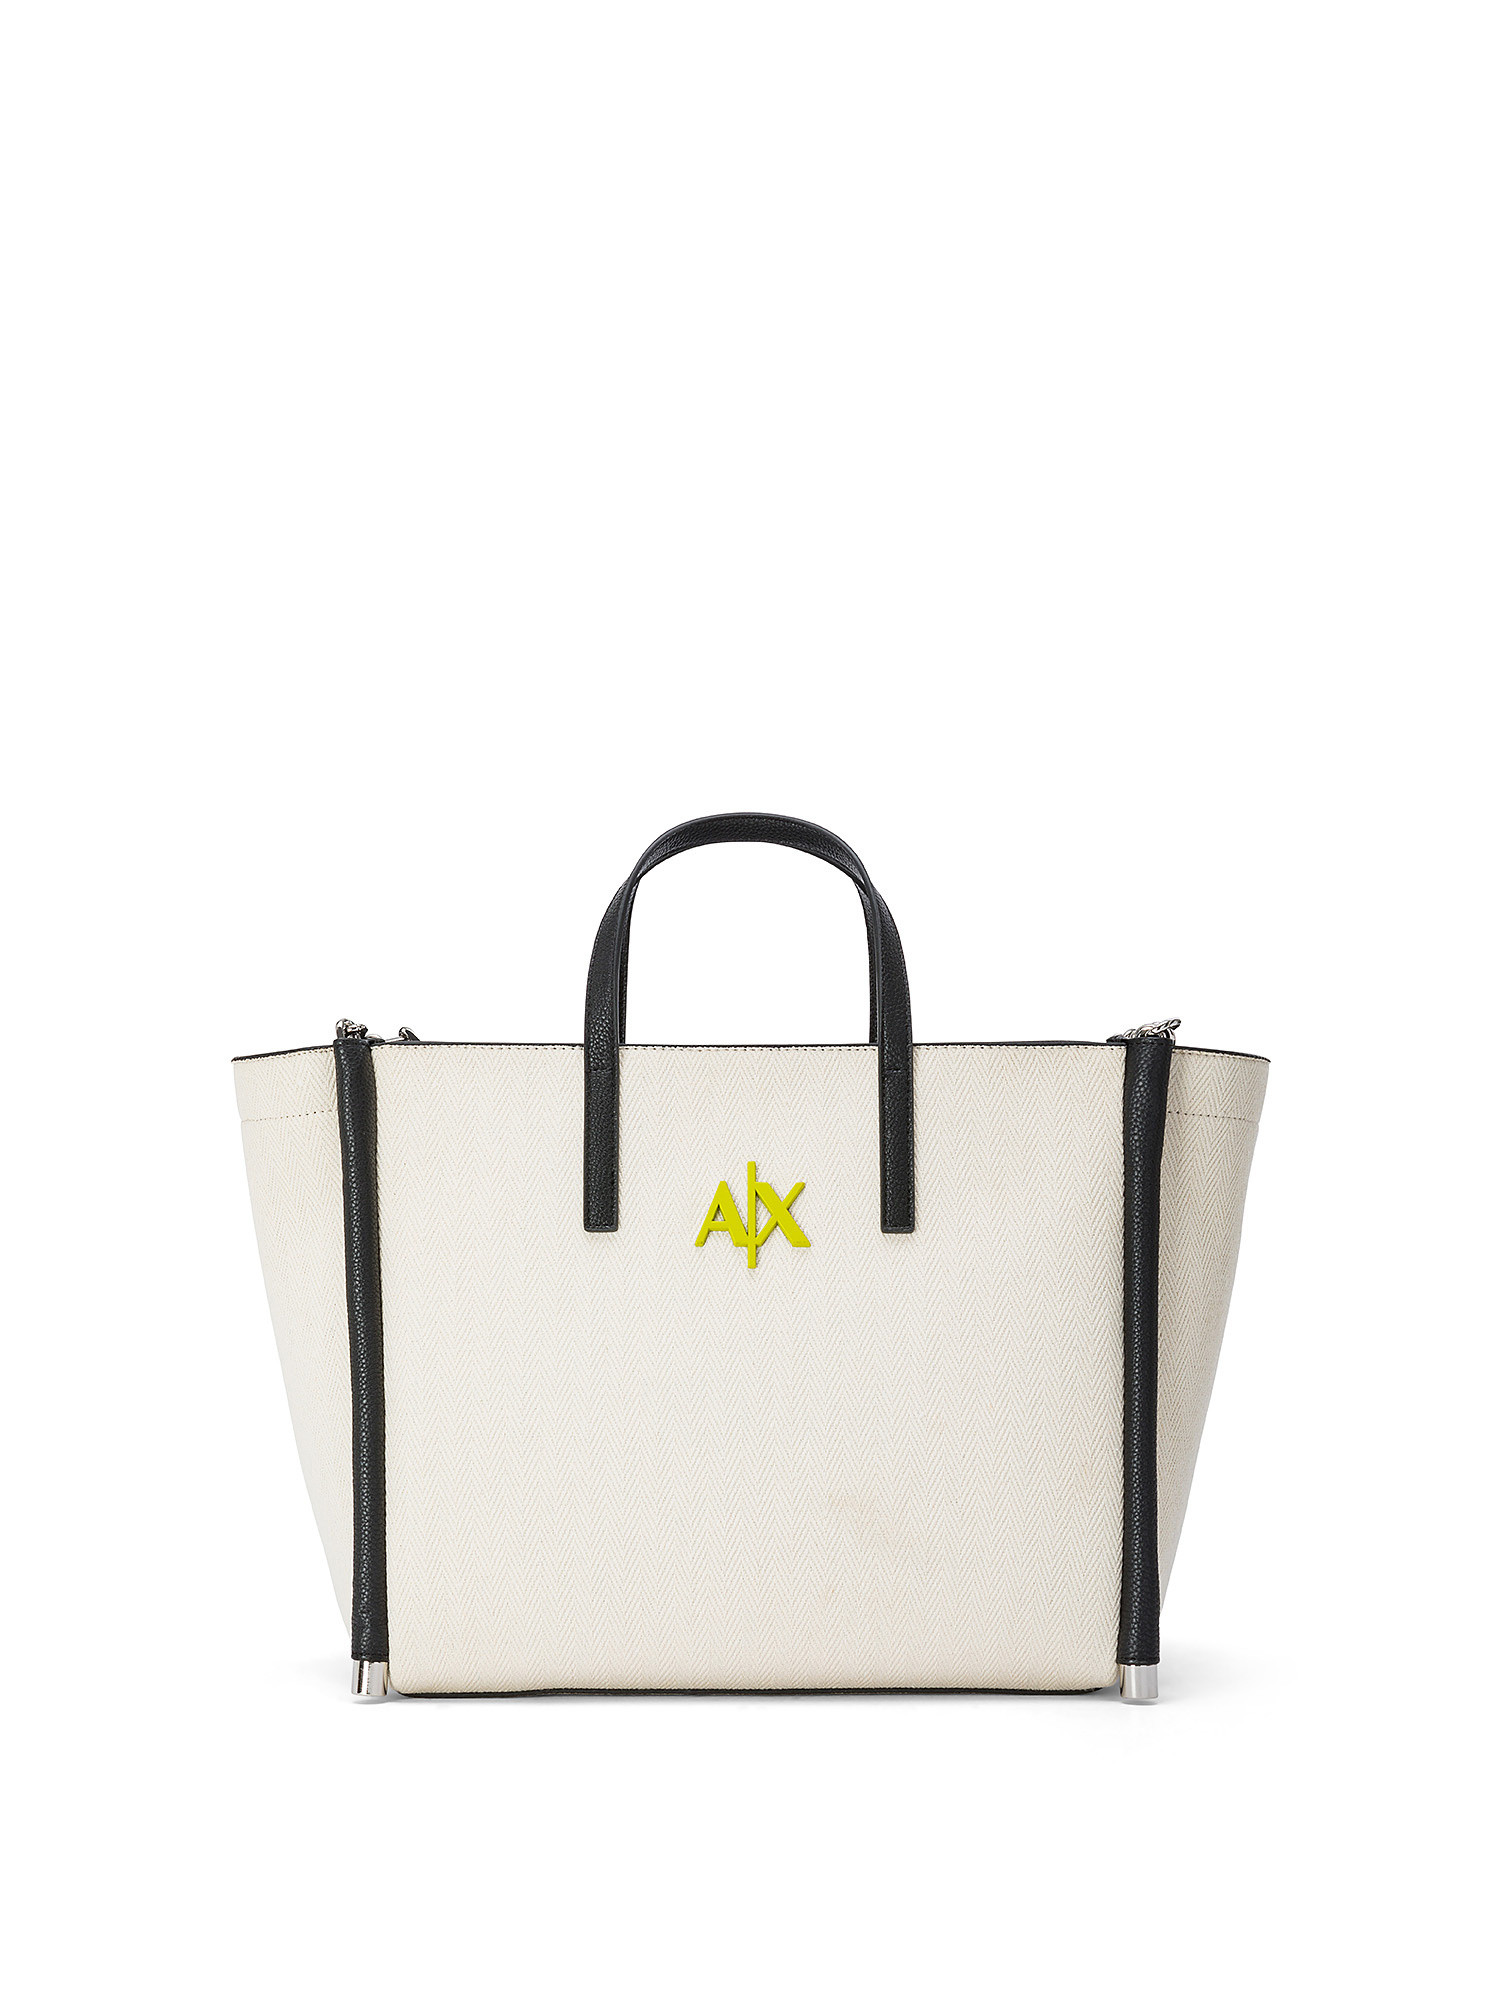 Armani Exchange - Shopper bag with logo, Light Beige, large image number 0